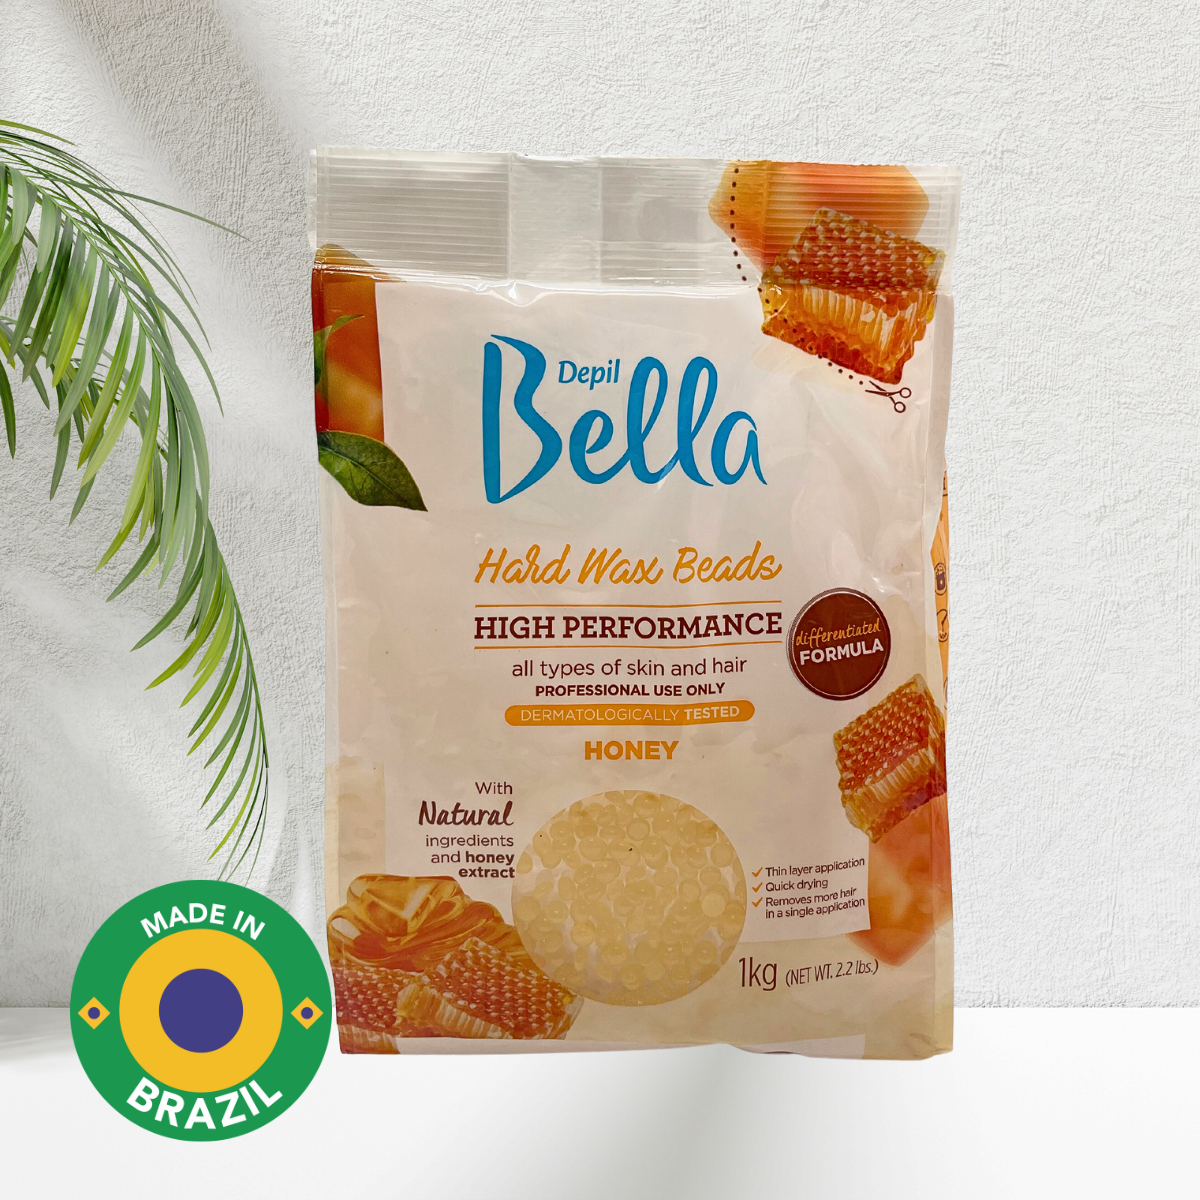 Depil Bella Hard Wax Beads Honey - Depilación profesional, 2.2 lbs